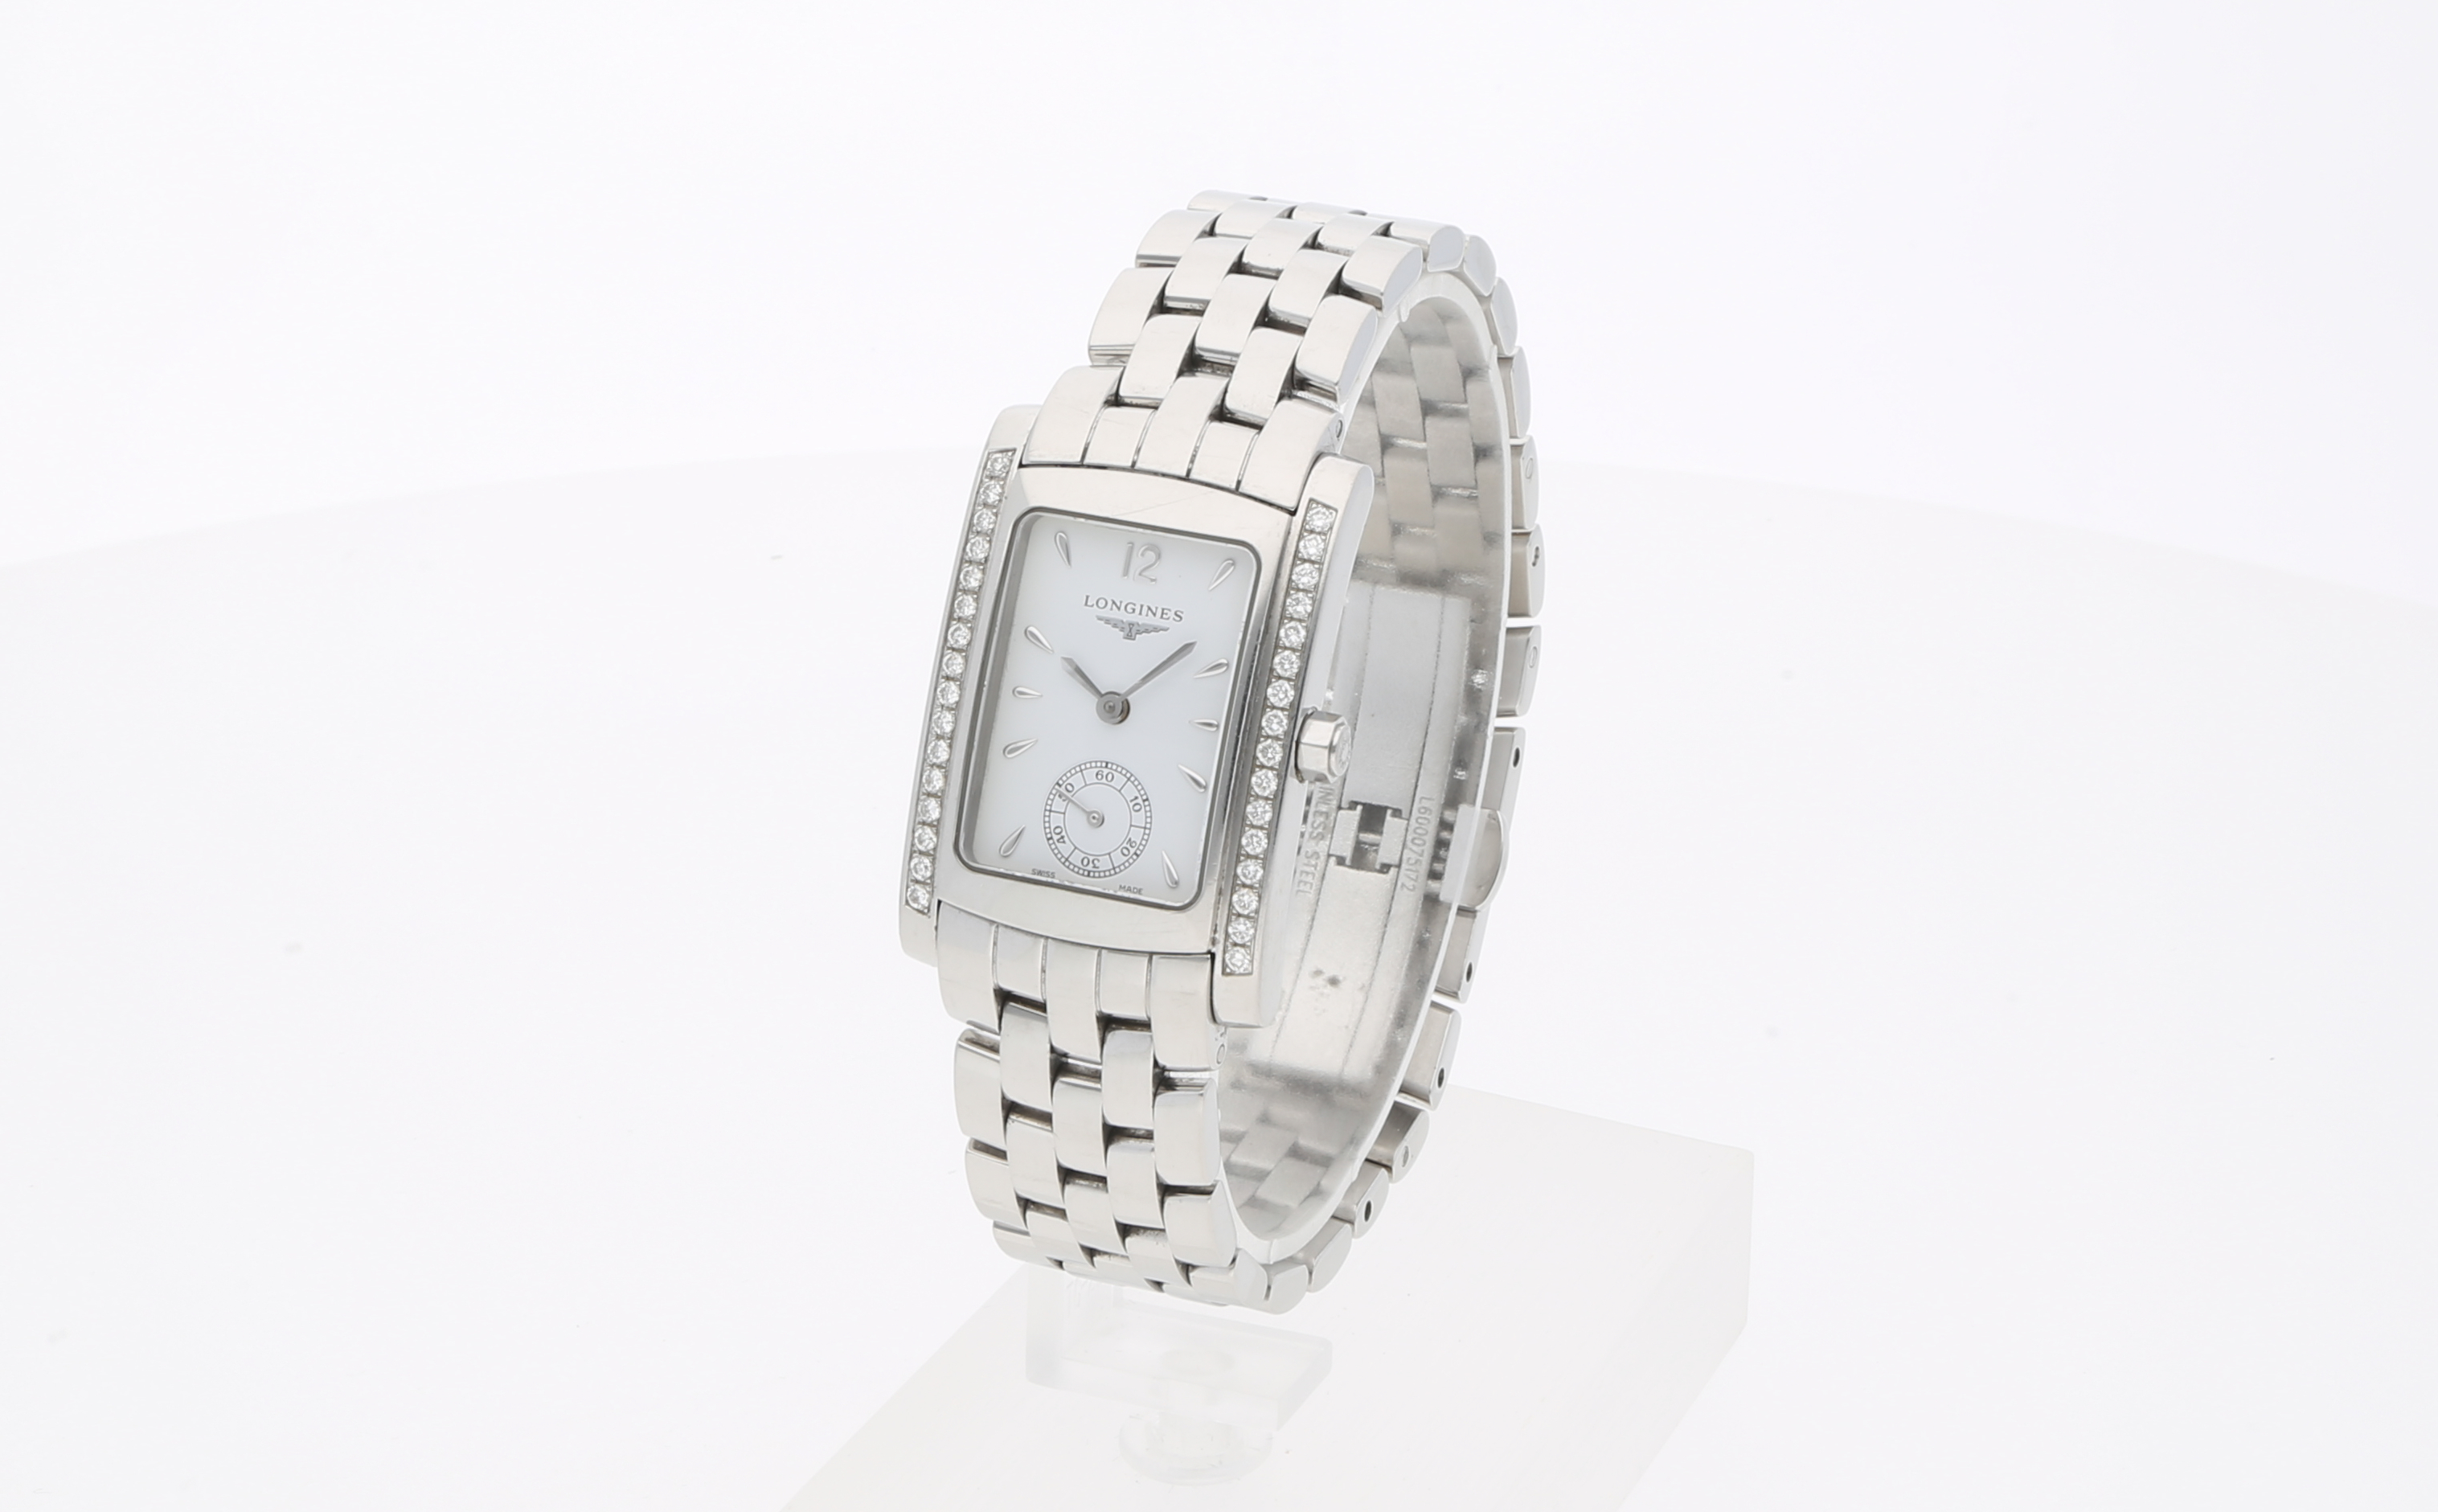 Second Hand Longinges Uhr jetzt online kaufen auf kaleaz.